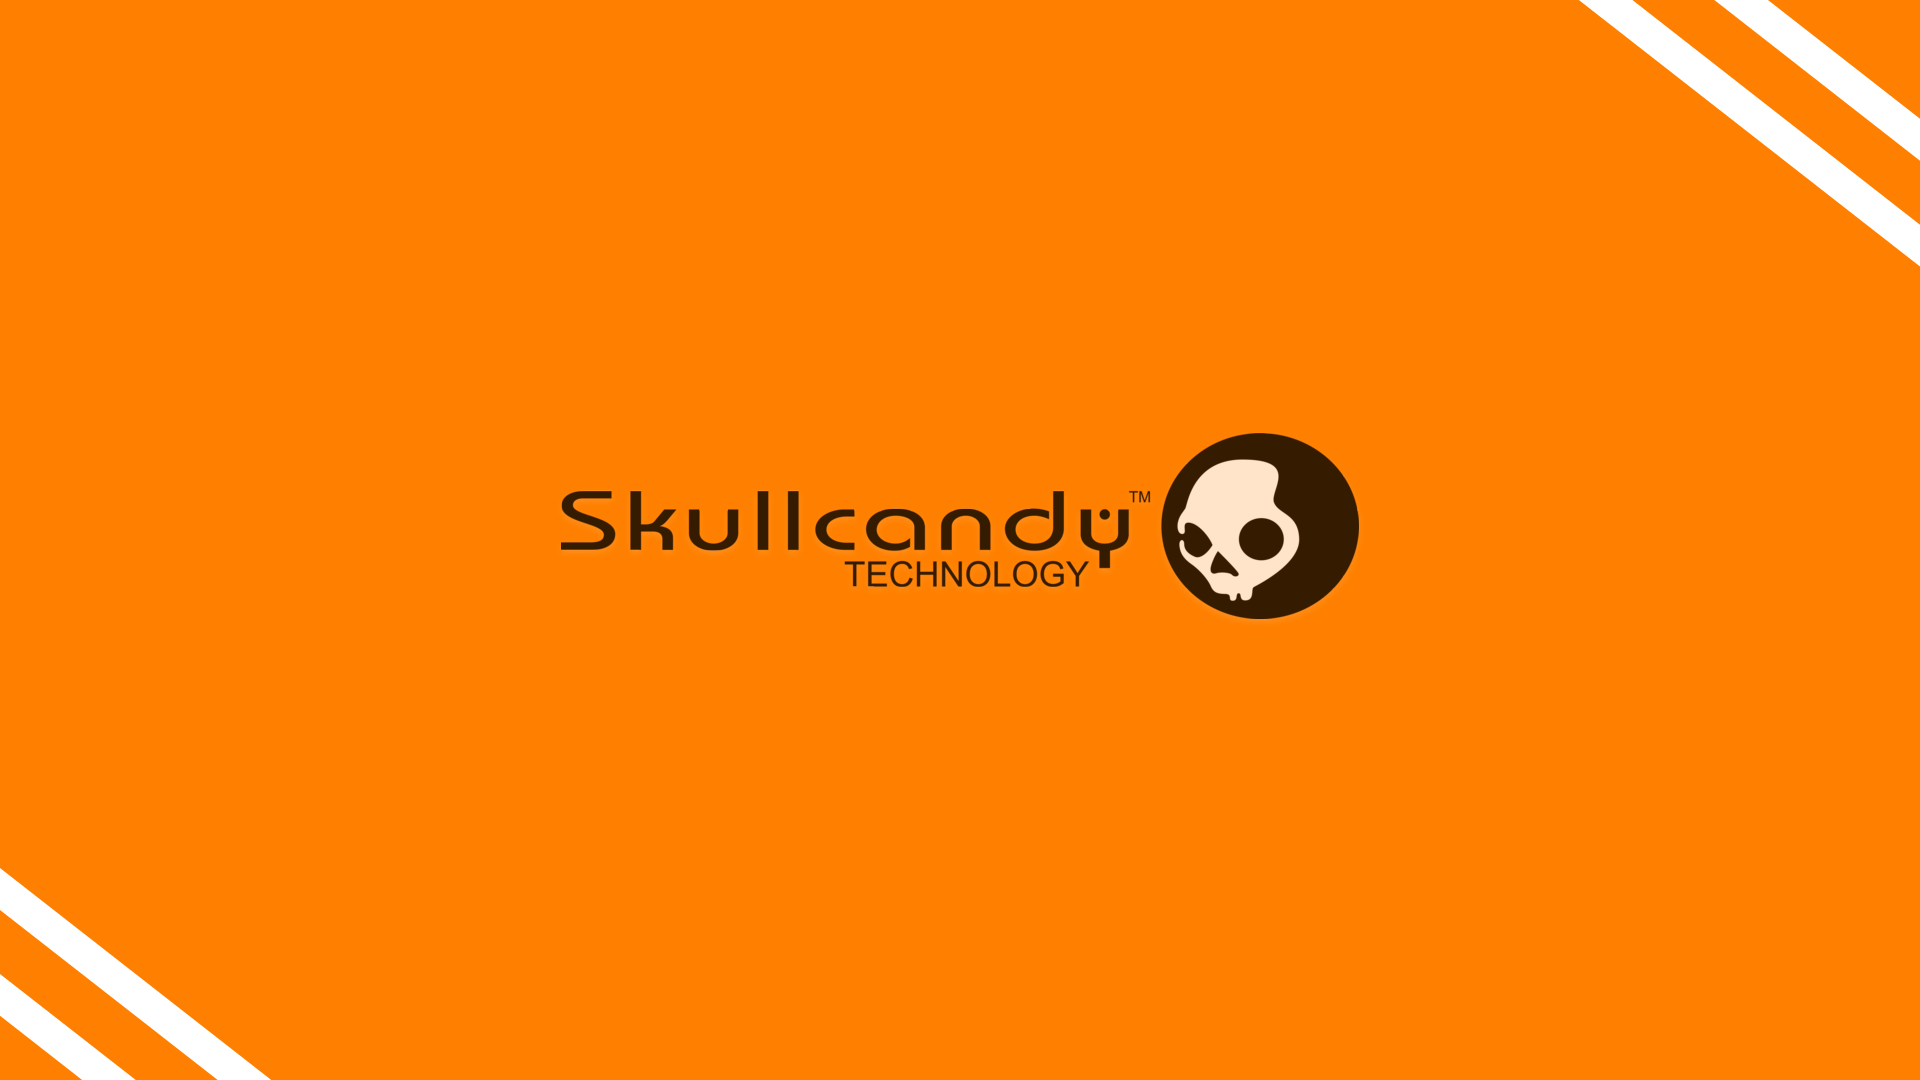 General 1920x1080 skull Skullcandy logo